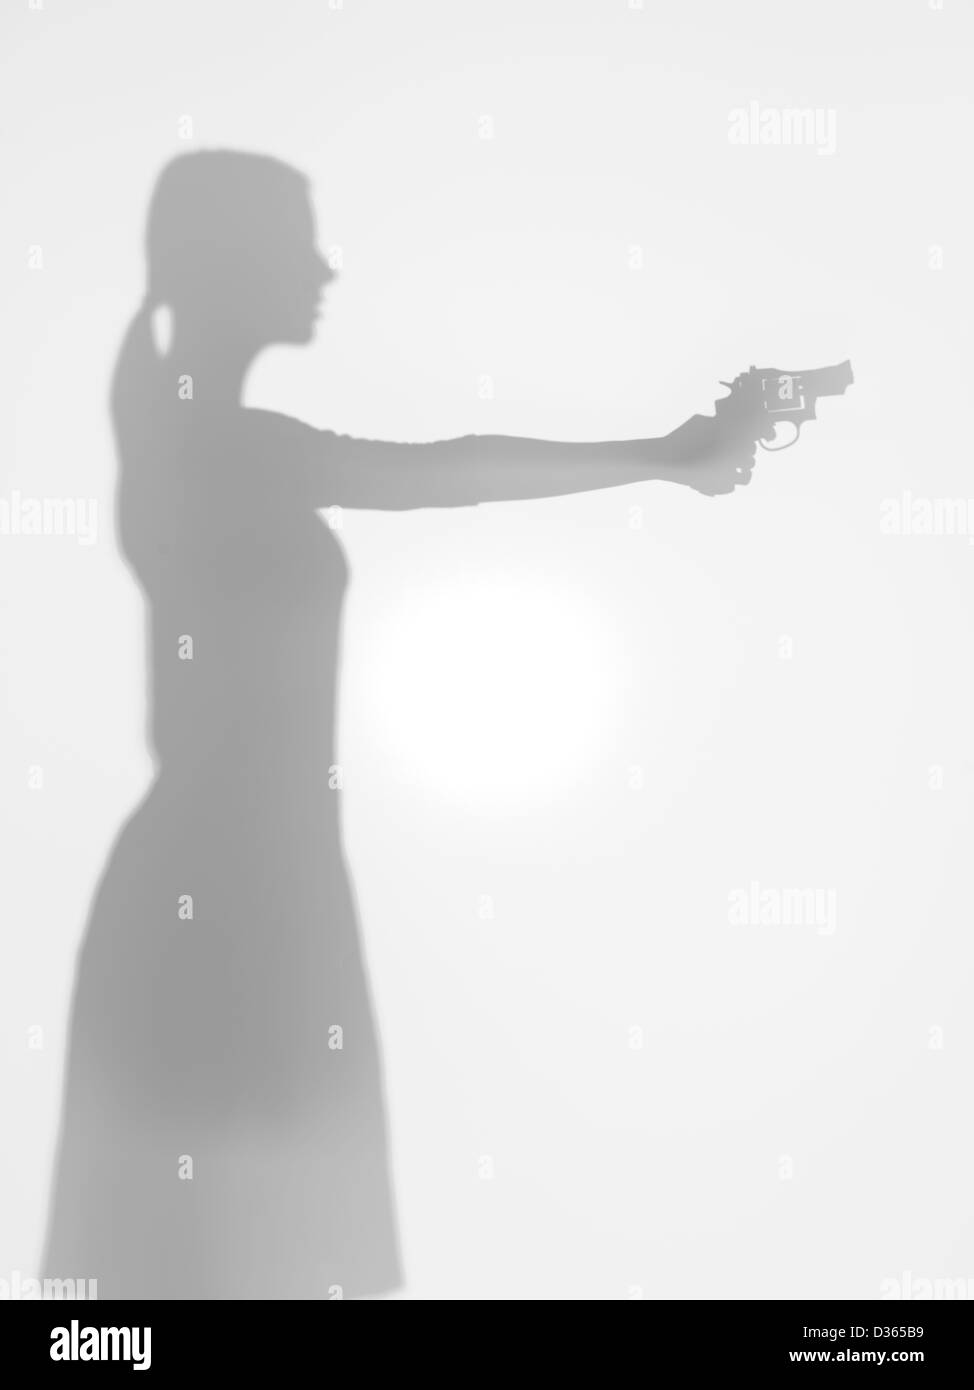 Vista laterale della silhouette di donna in possesso di una pistola mirando davanti a lei, dietro una superficie diffusa Foto Stock